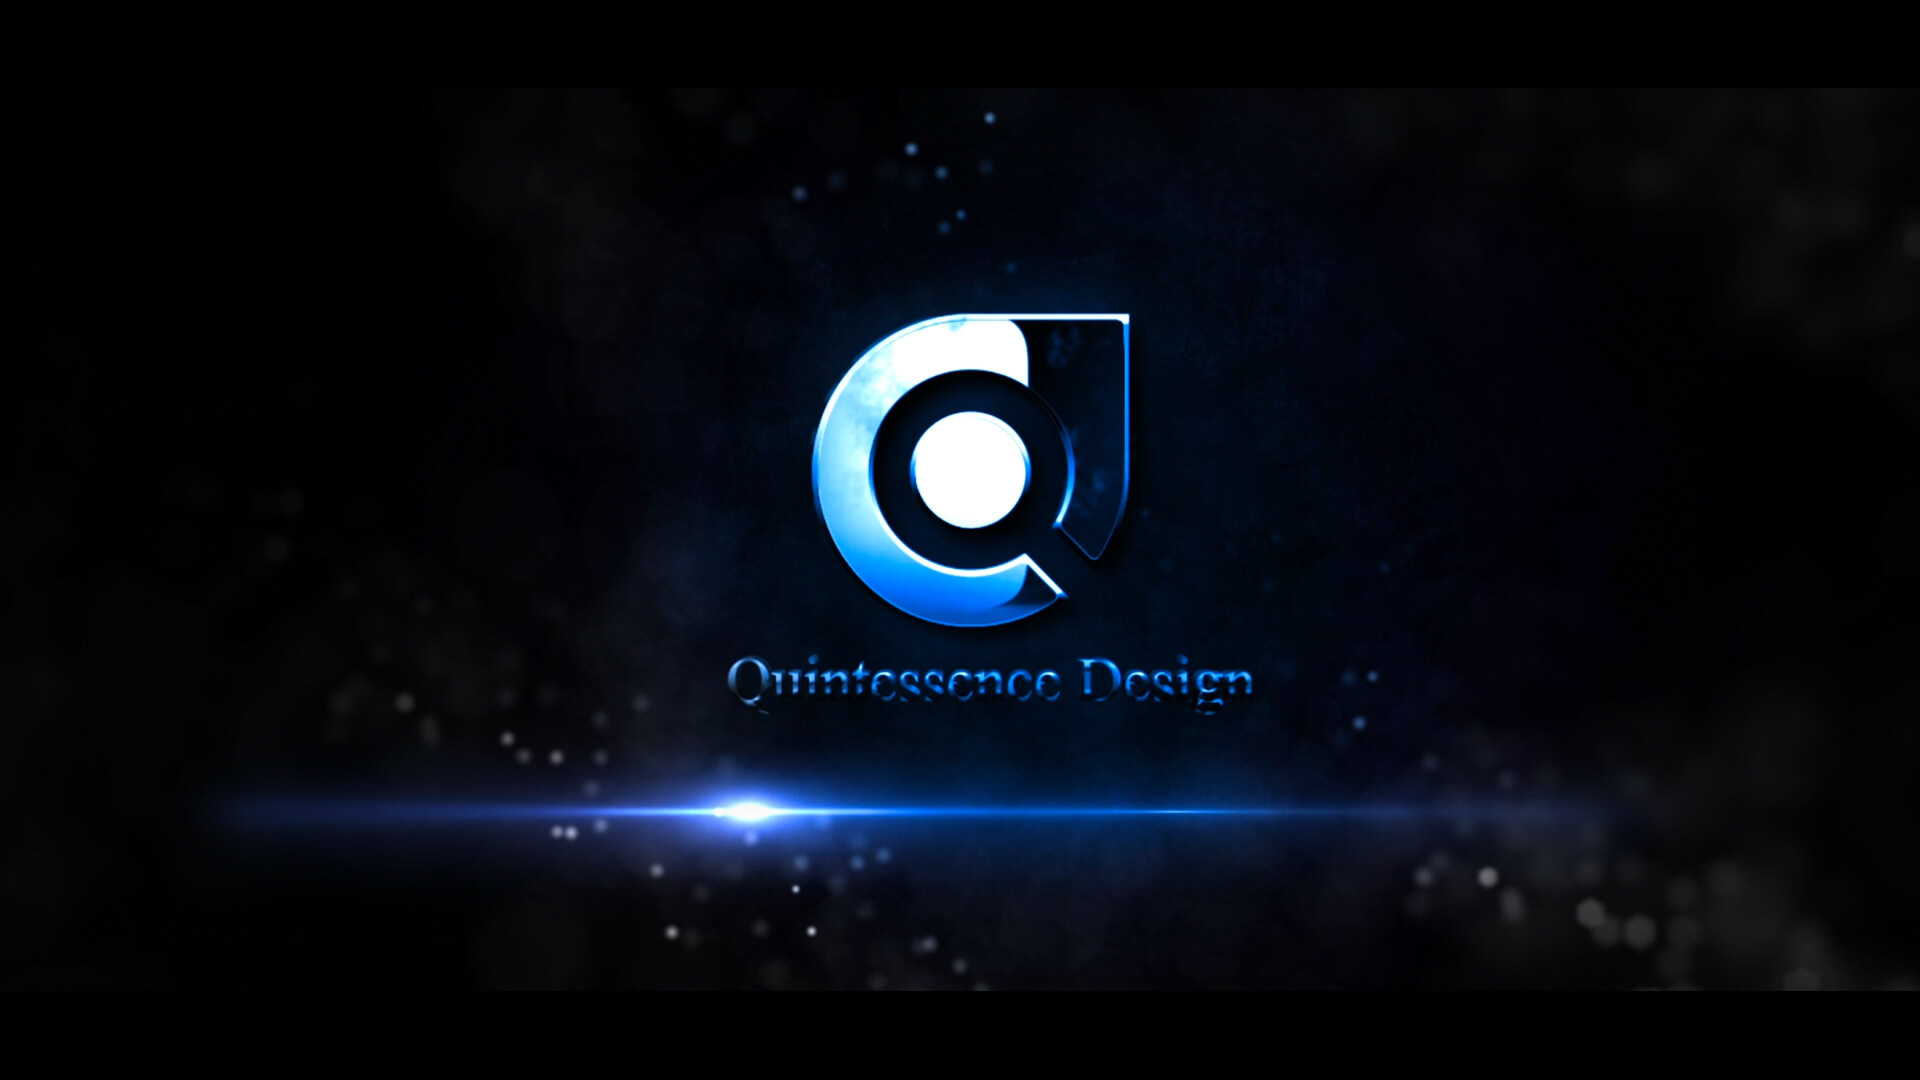 【品牌形象篇】: Q&D (Quintessence Design)　品牌形象片